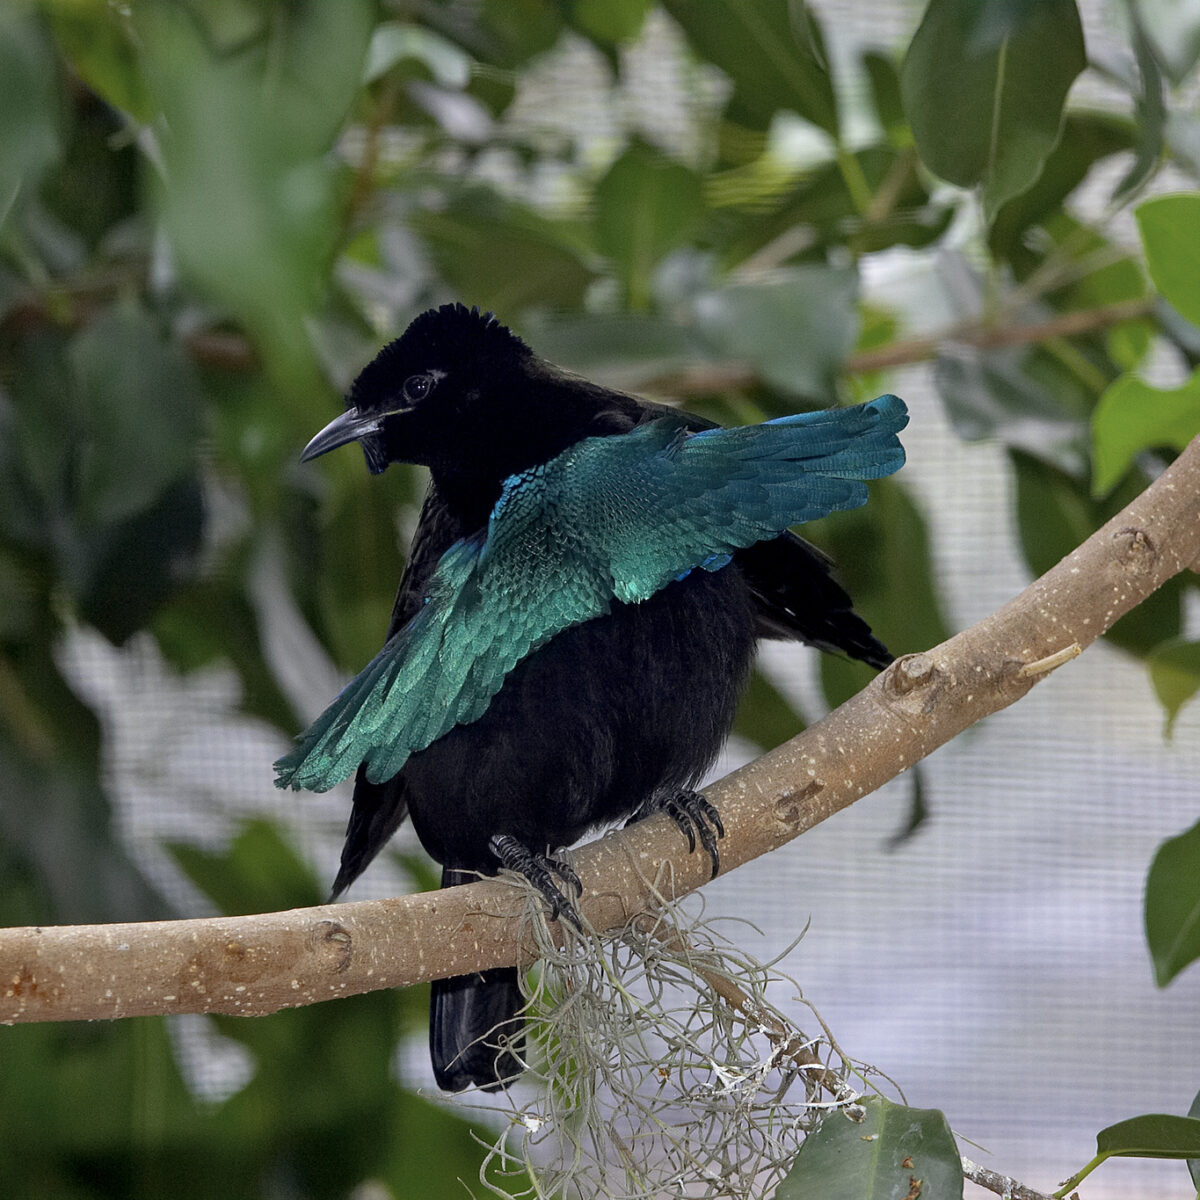 Iridescent Feathers- Bird Breeder